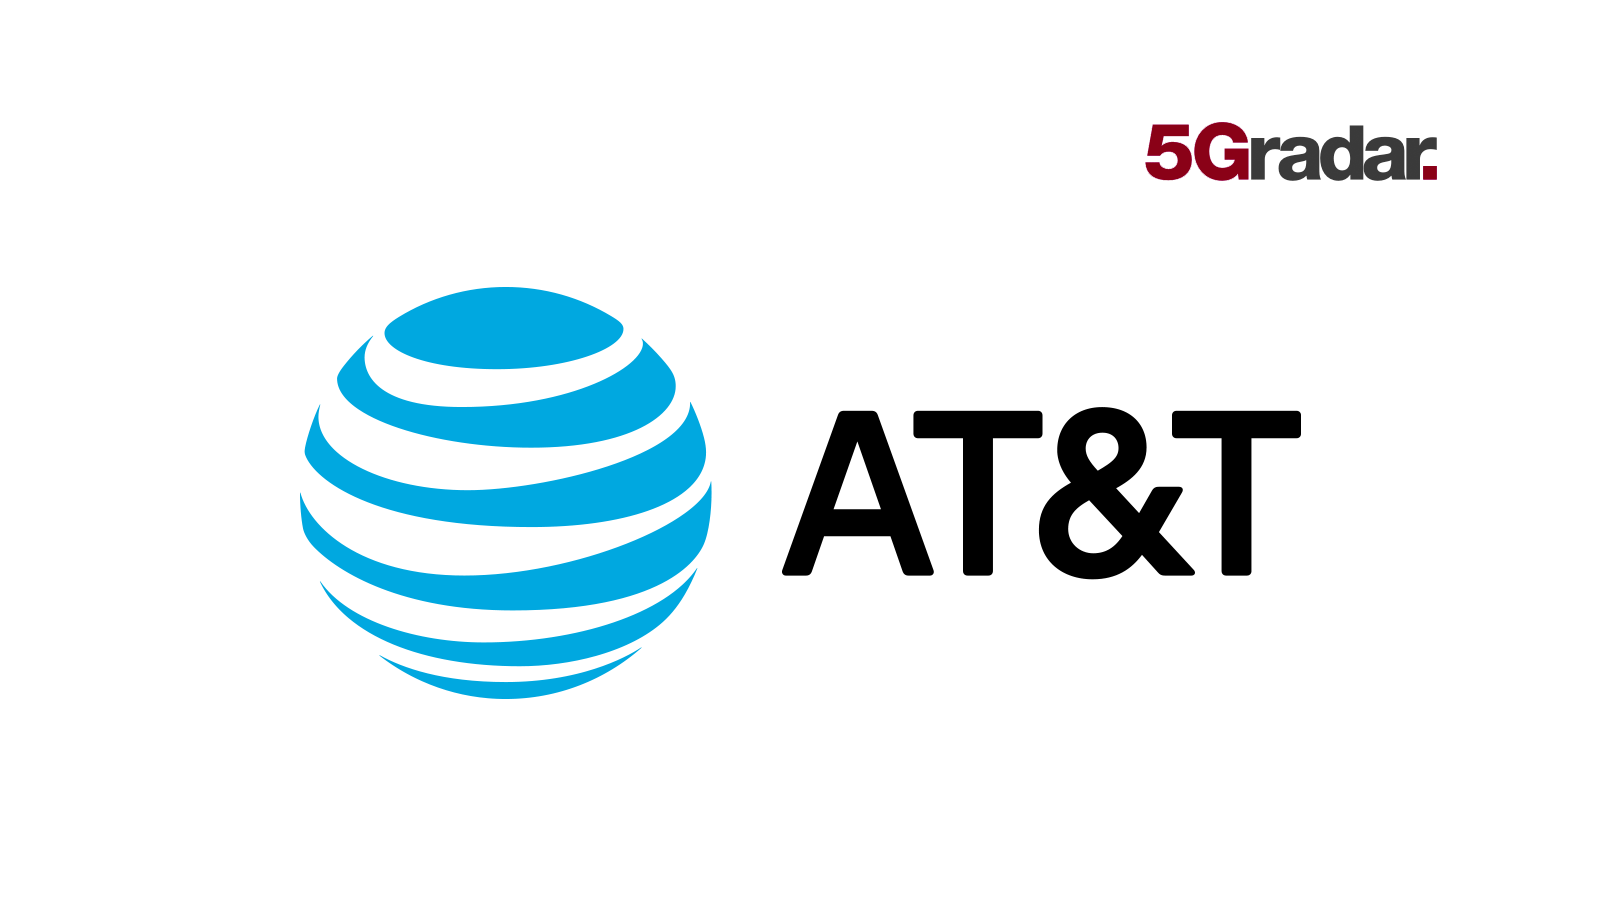 AT&T 5G